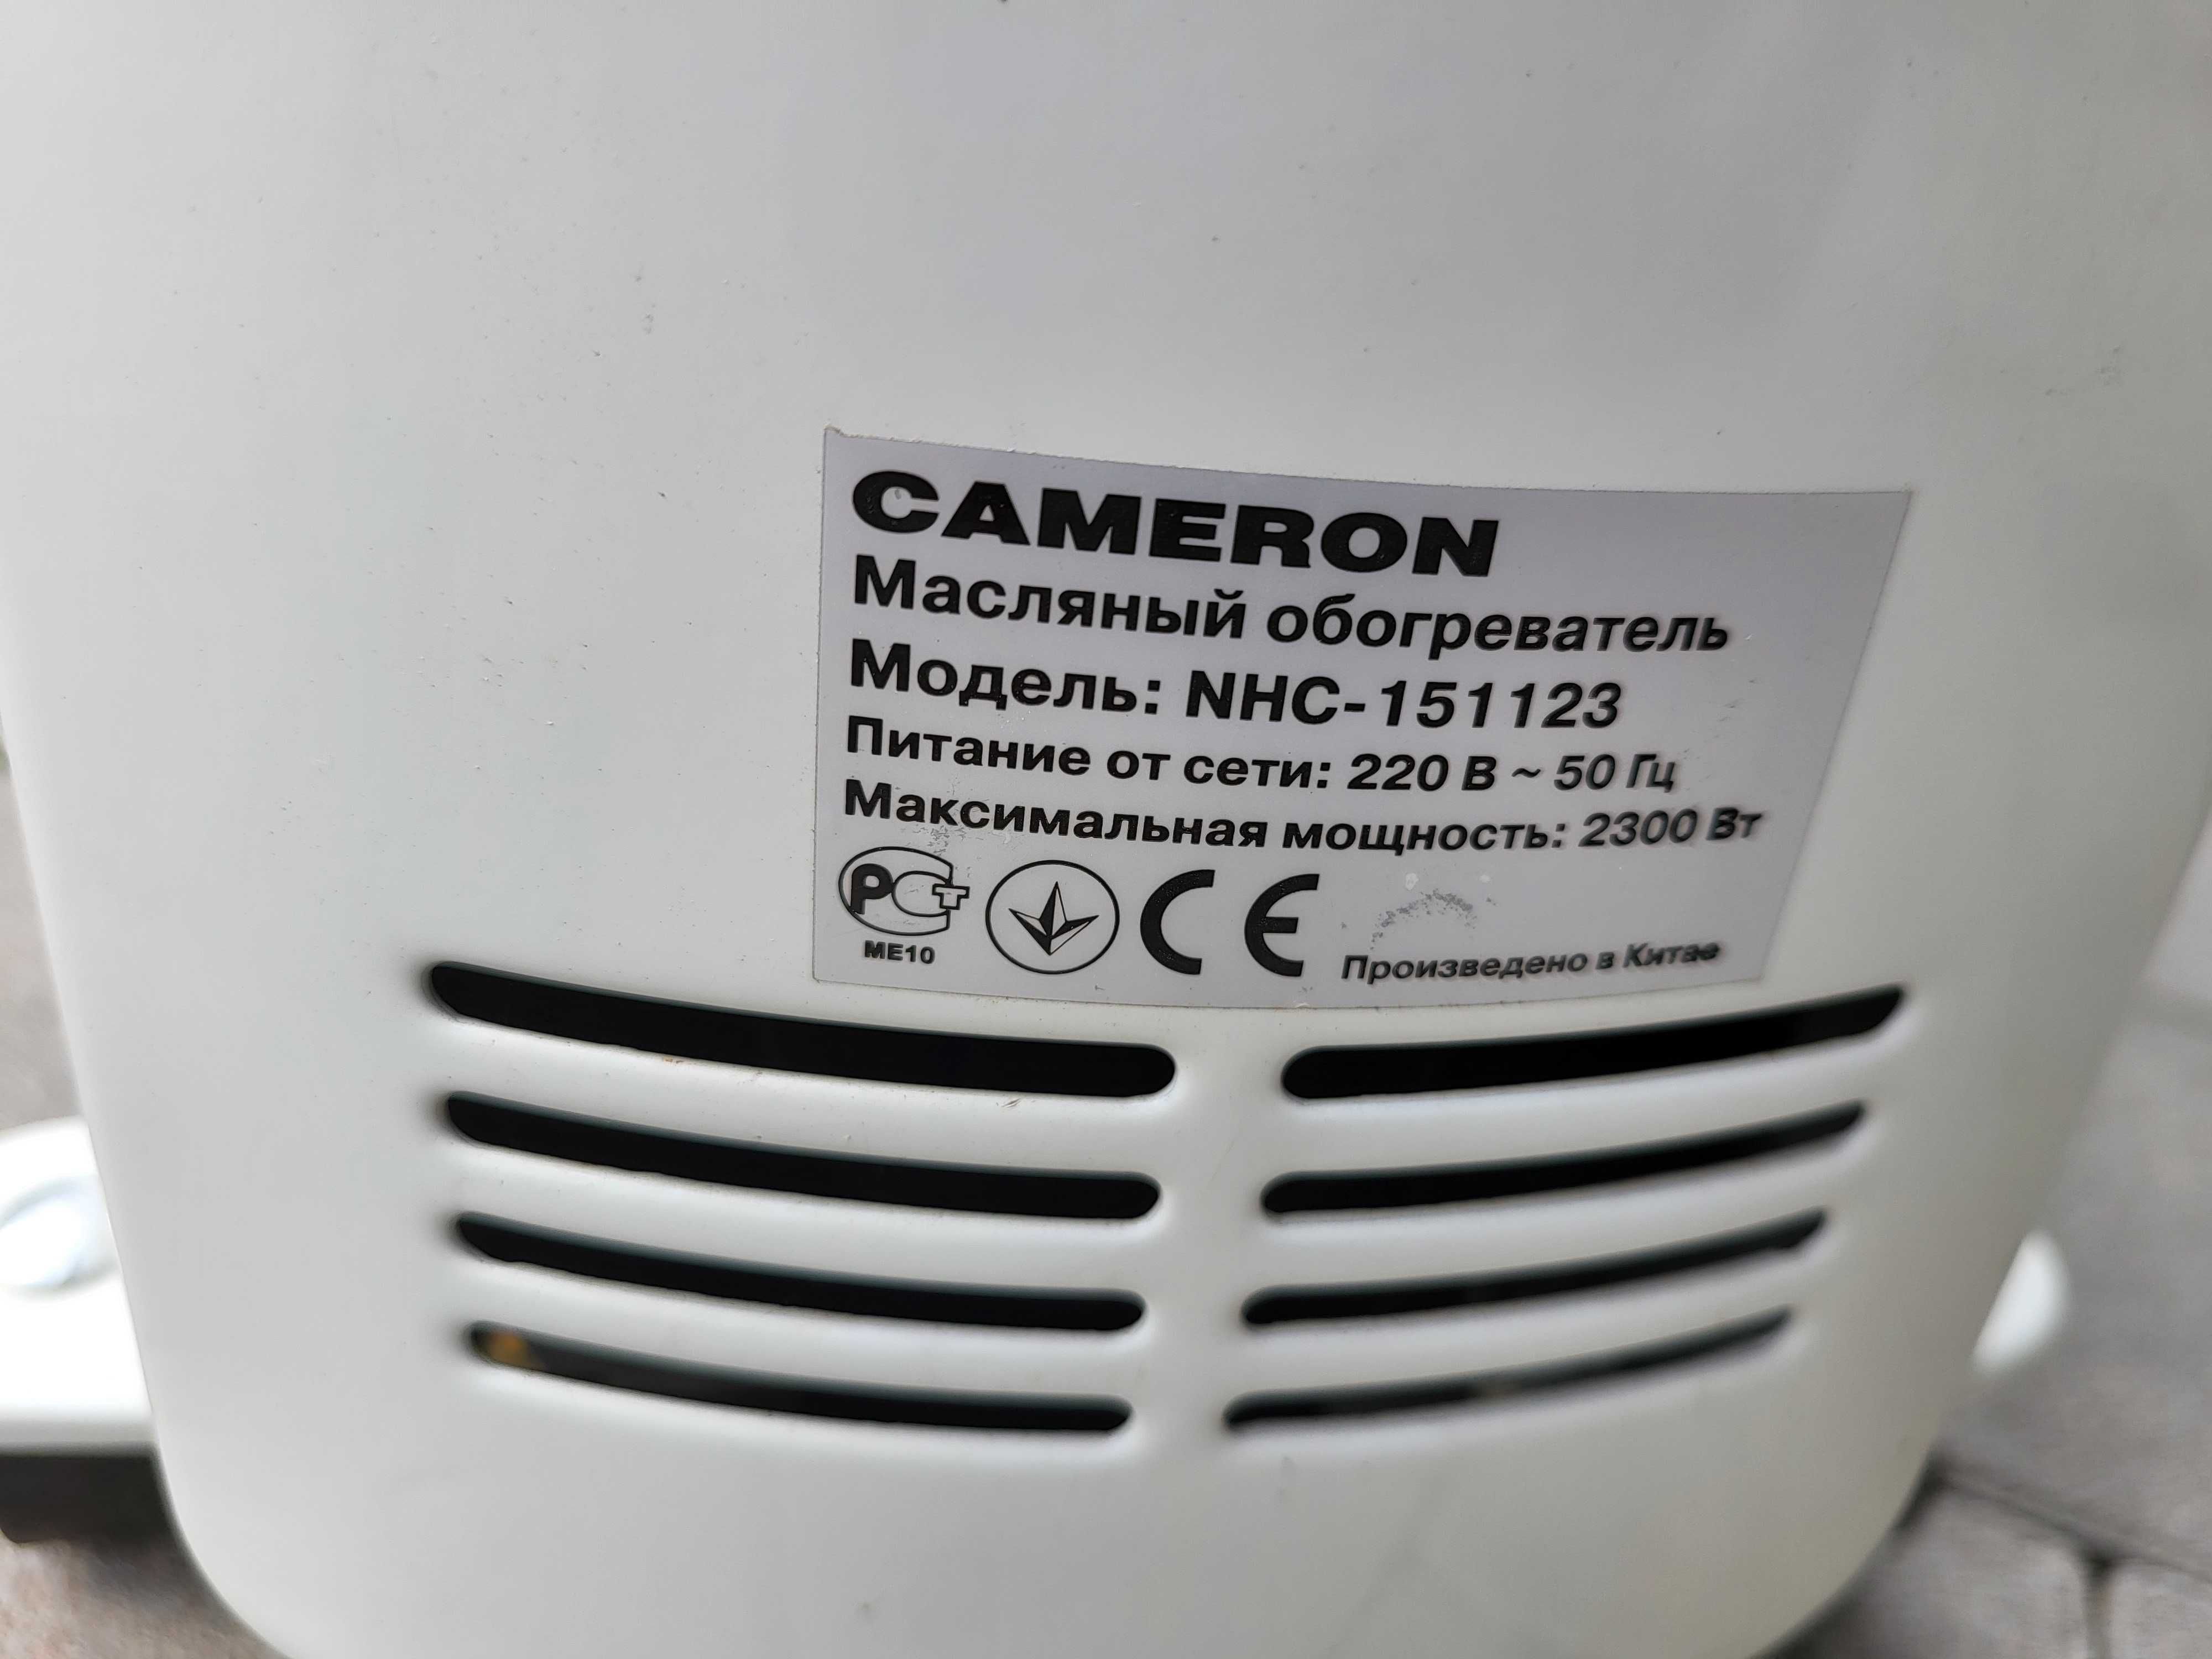 Масляний нагрівач радіатор Cameron NHC-151123 2,3кВт